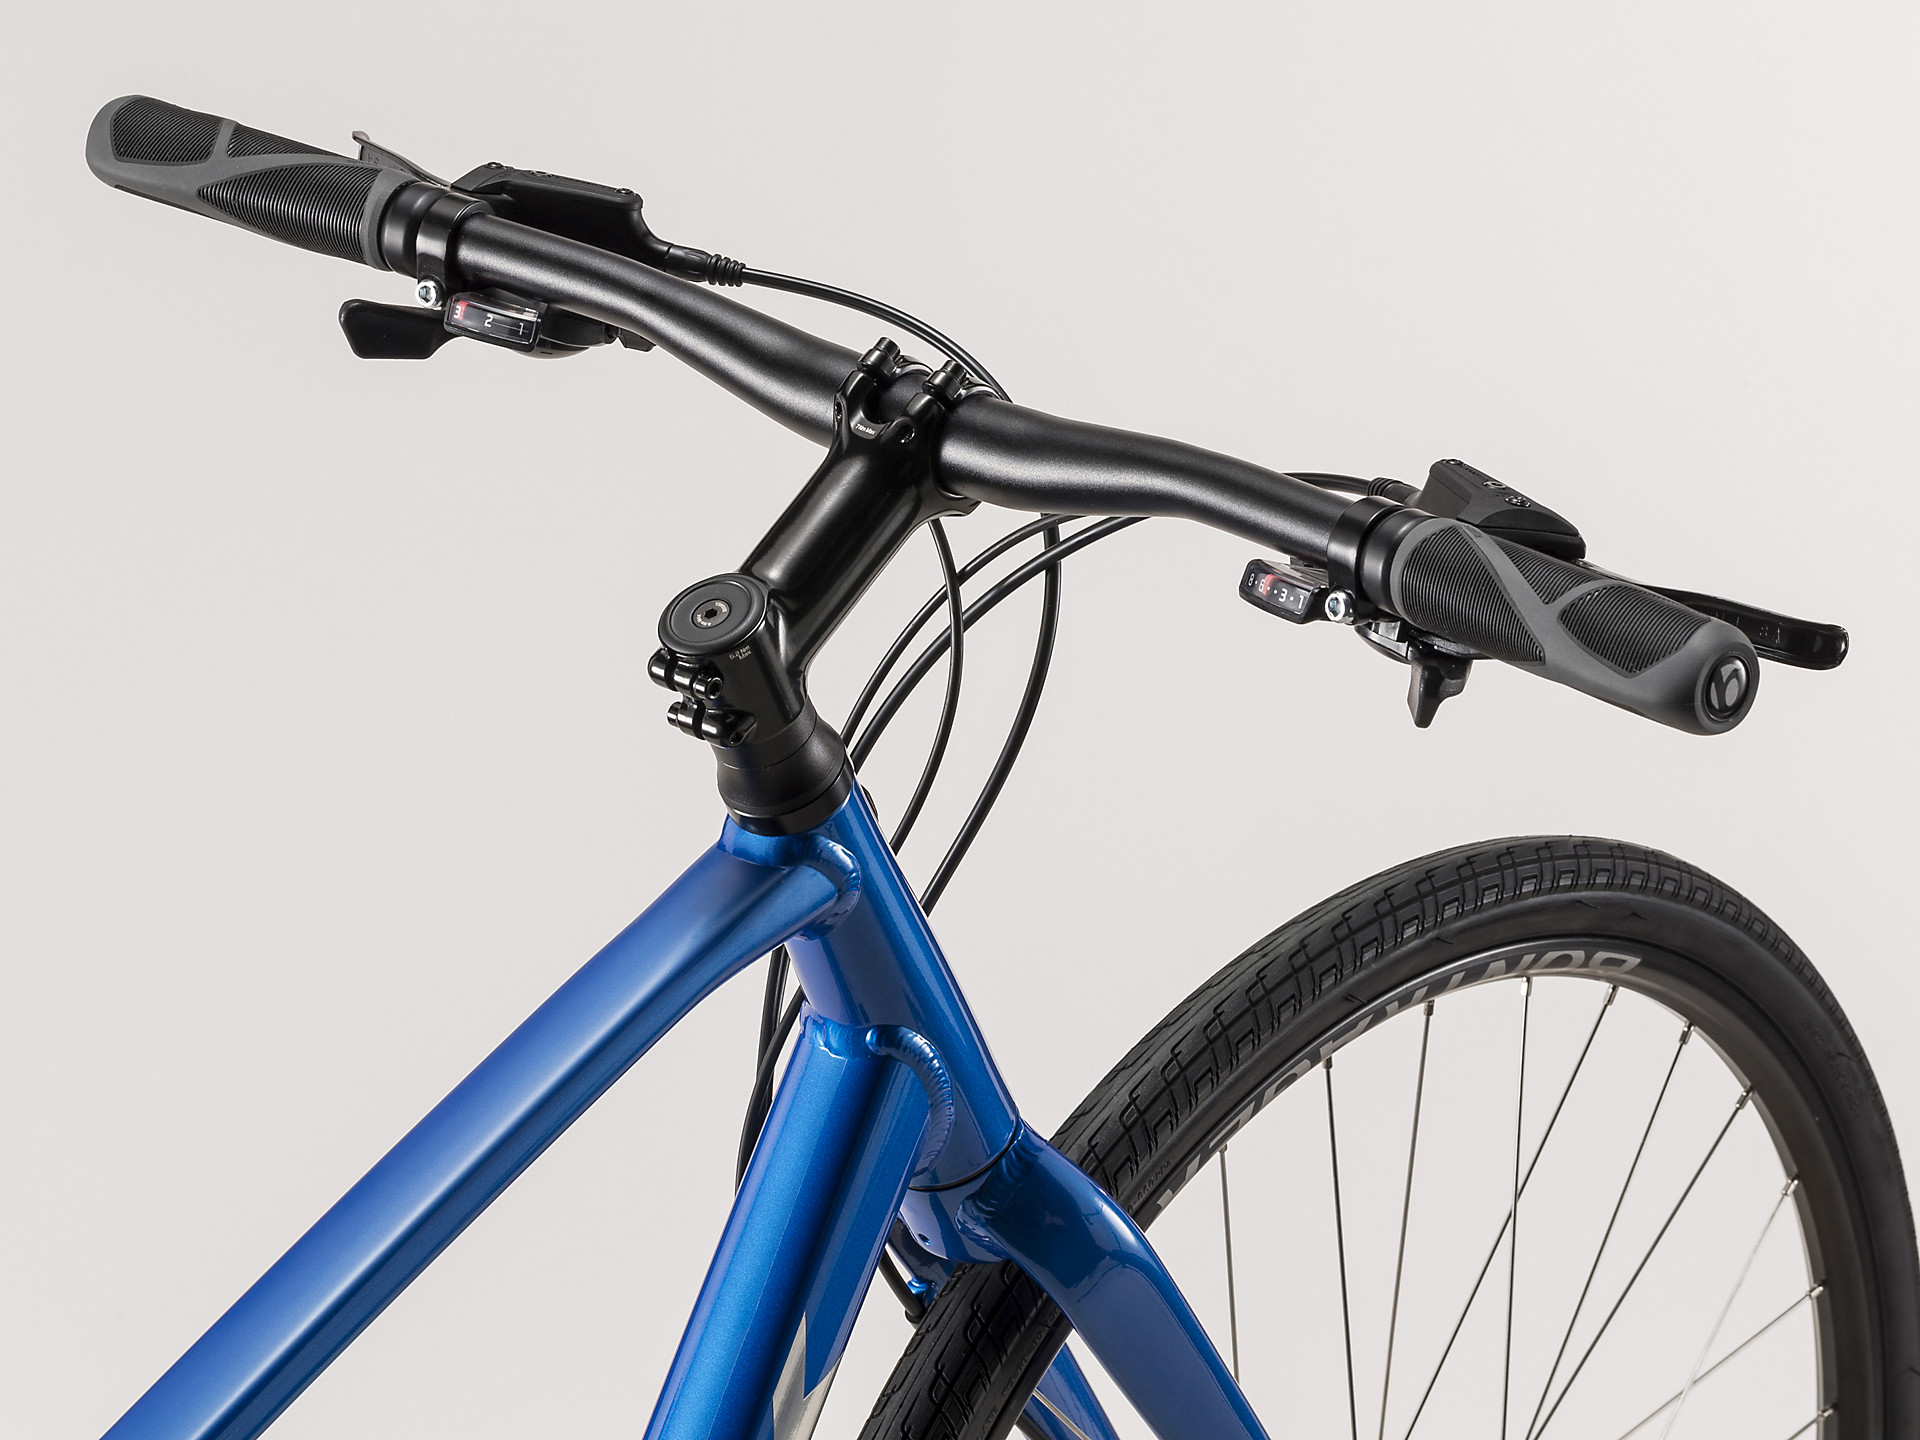 Lega di alluminio Water Bottle Holder rack rapido montaggio facile per strada mountain bike